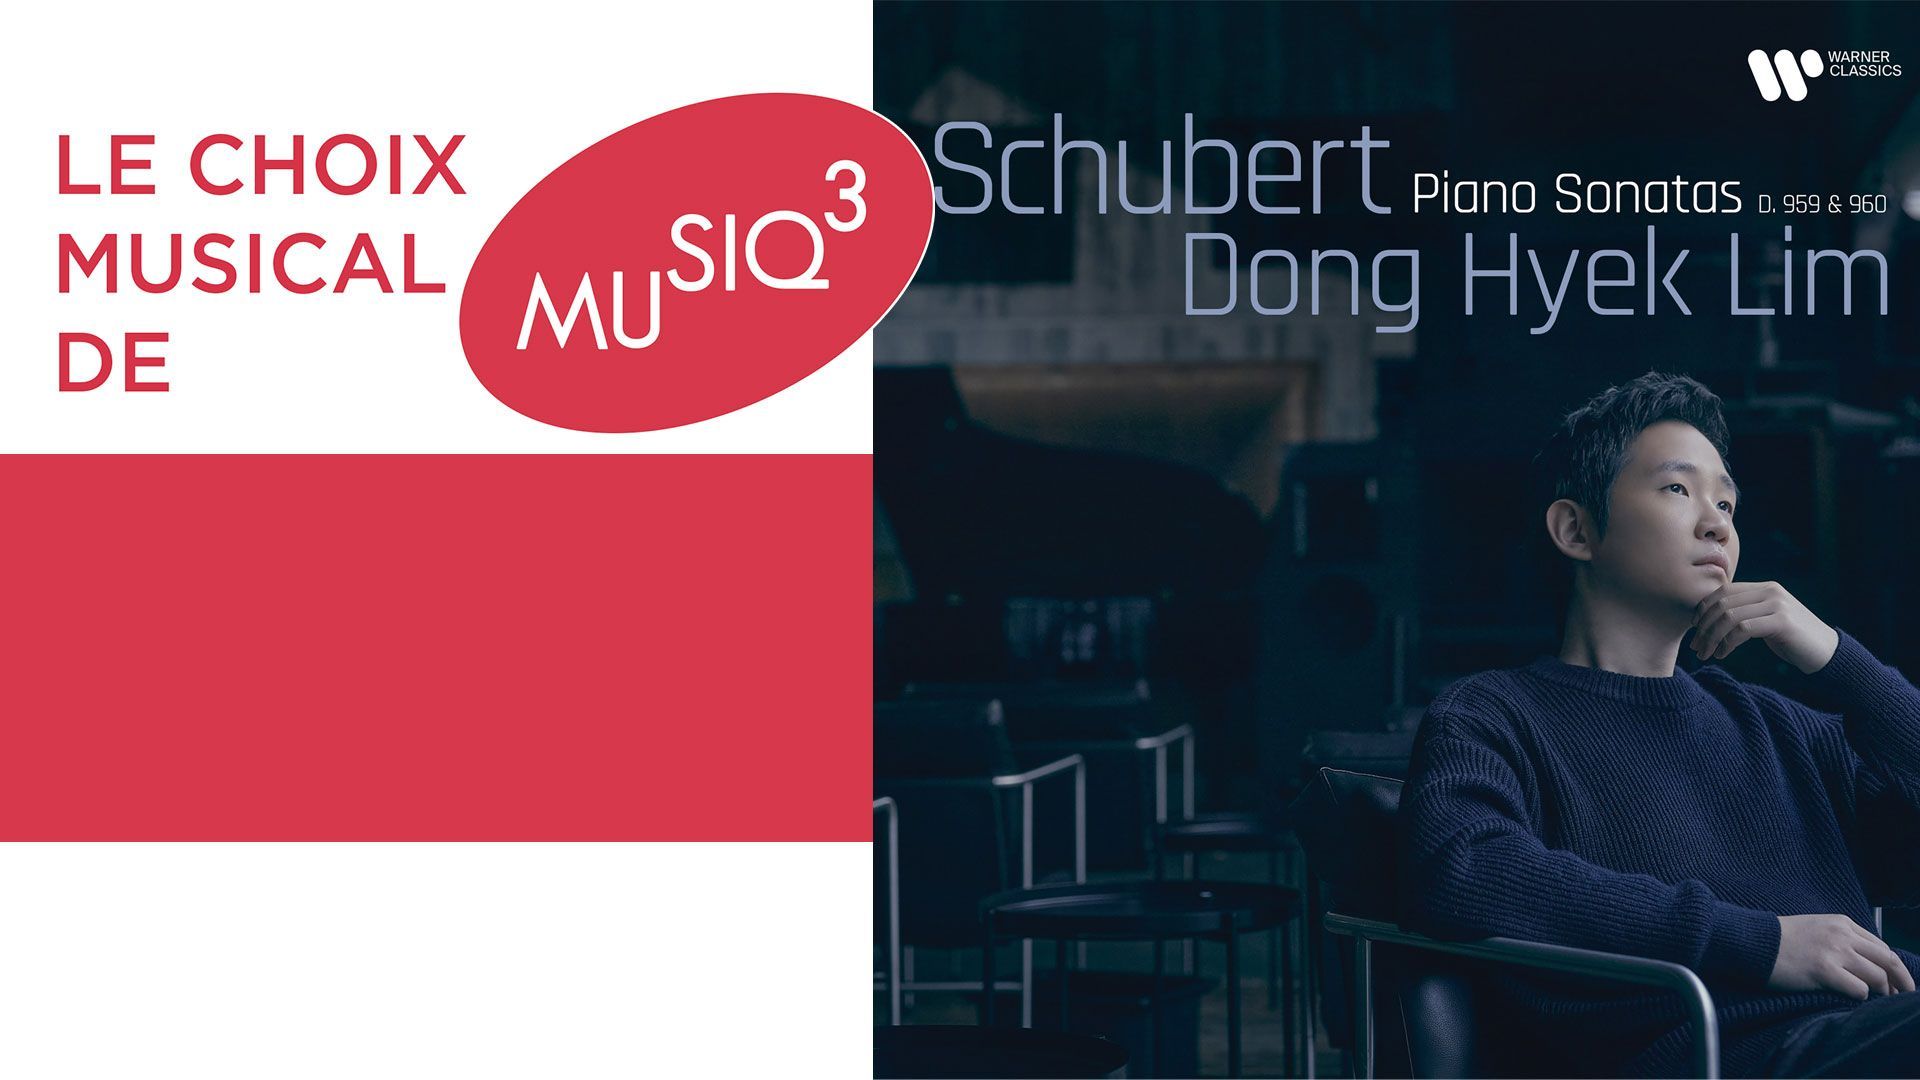 Deux sonates posthumes de Schubert sous les doigts de Dong Hyek Lim